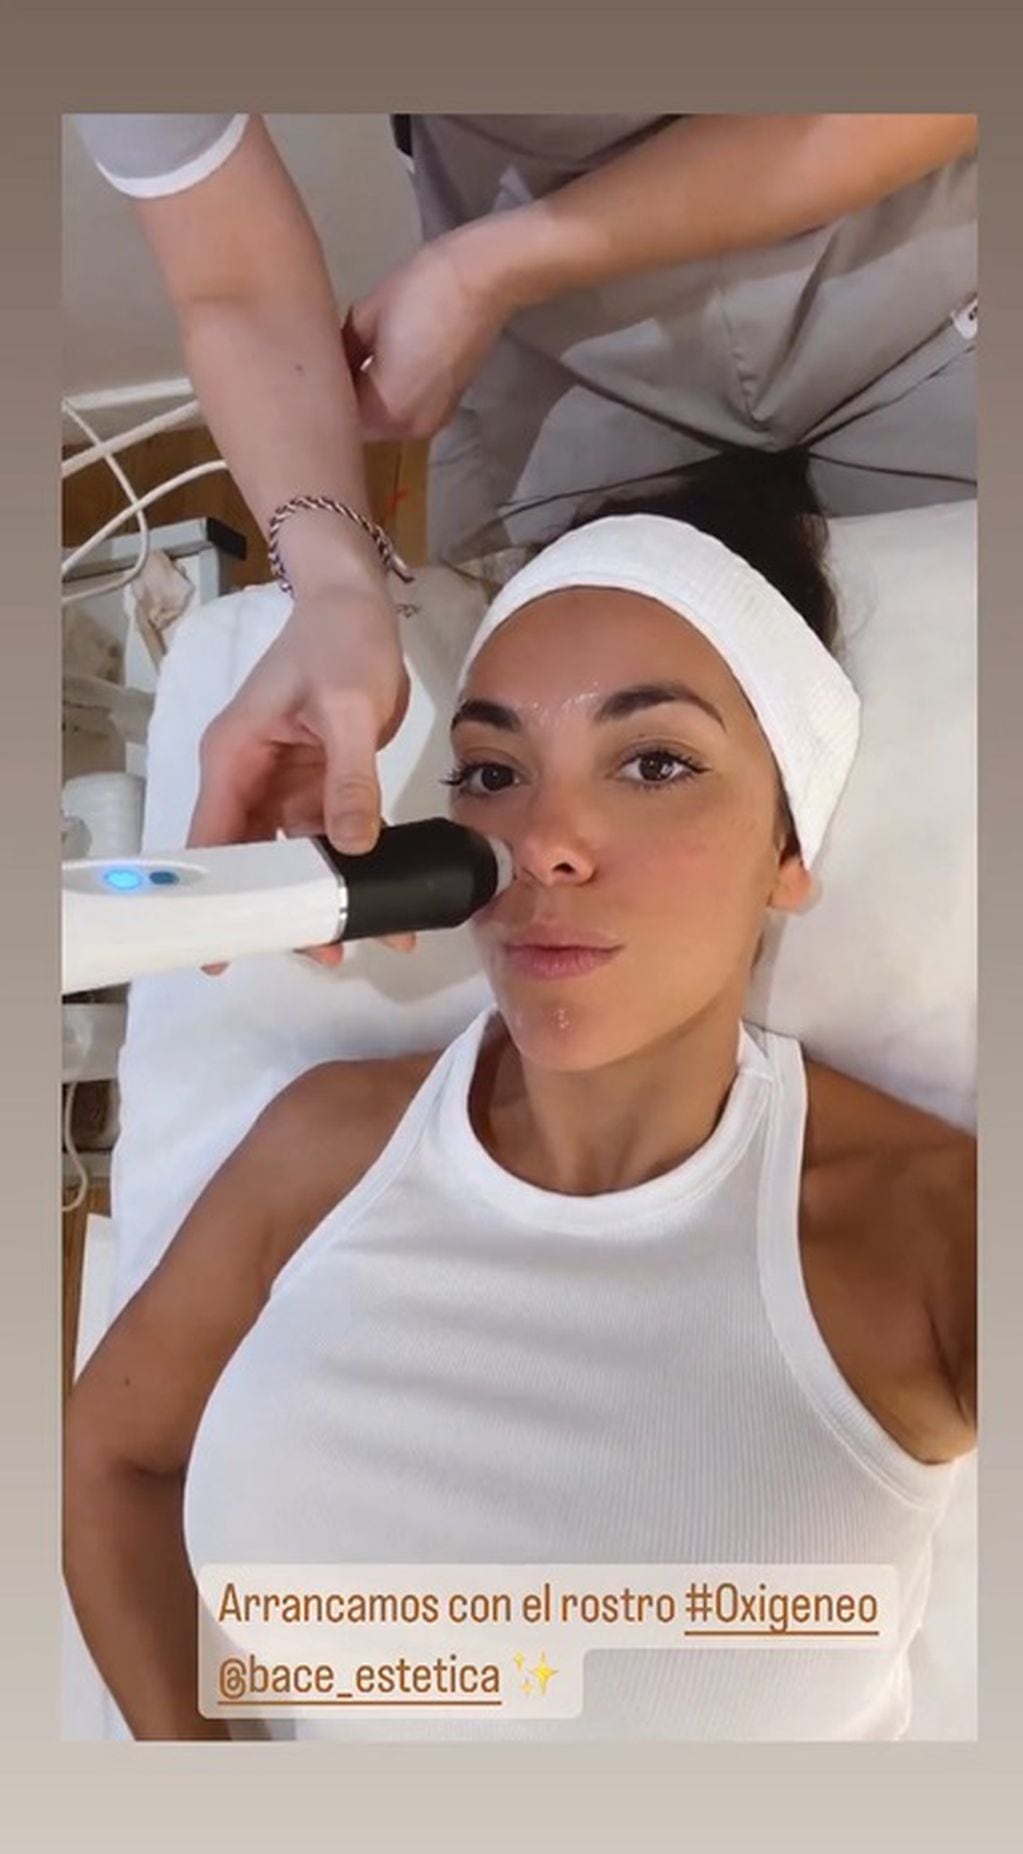 La modelo se sometió a un tratamiento facial y lo mostró en redes sociales / Foto: Instagram